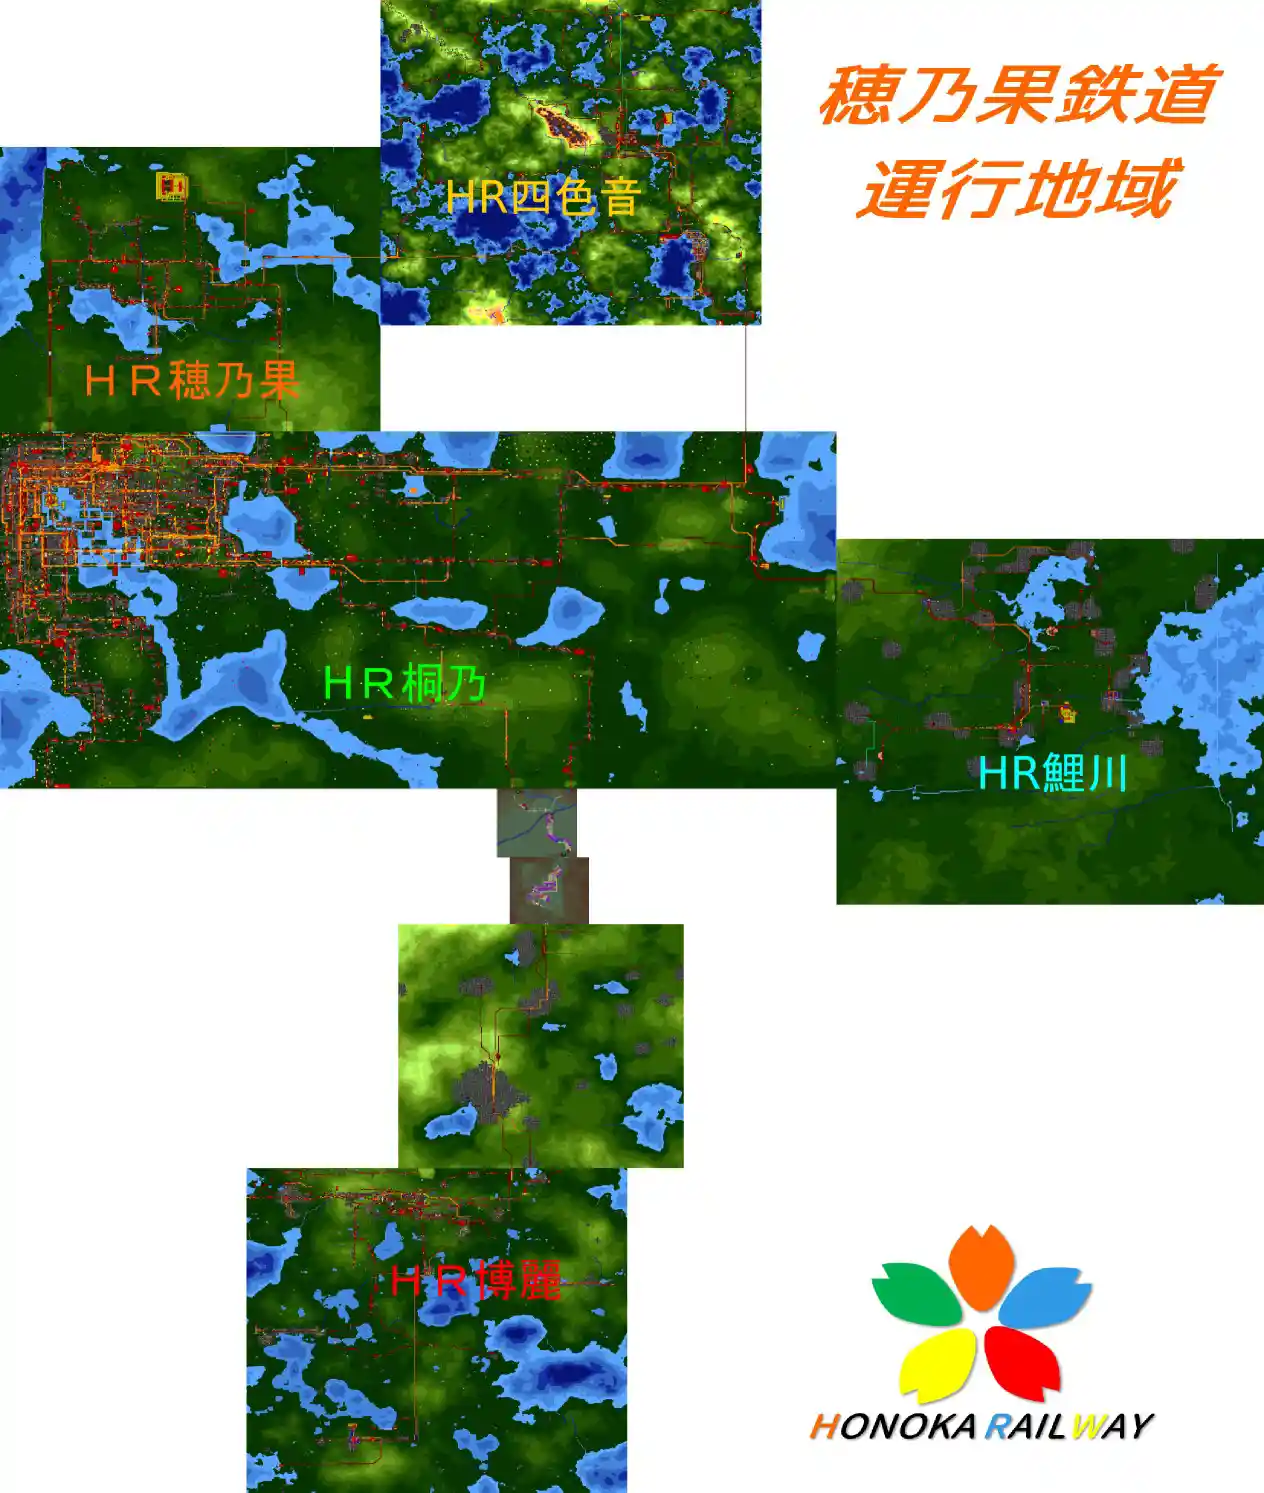 HR_Map.jpg